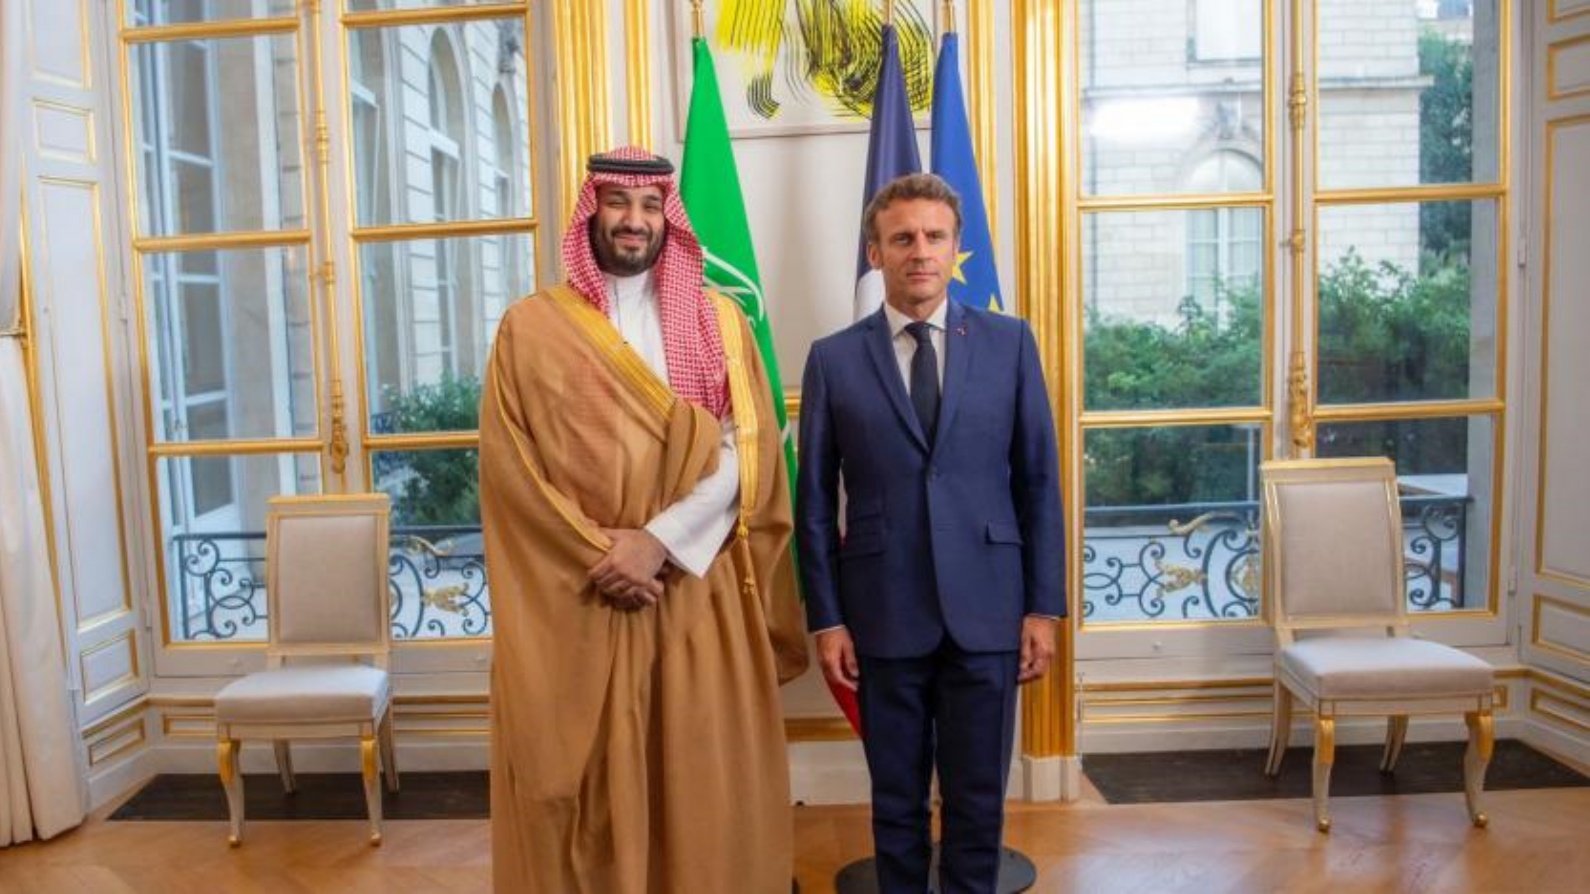 الرئيس الفرنسي إيمانويل ماكرون لدى استقباله ولي العهد السعودي الأمير محمد بن سلمان في قصر الإليزيه (واس)